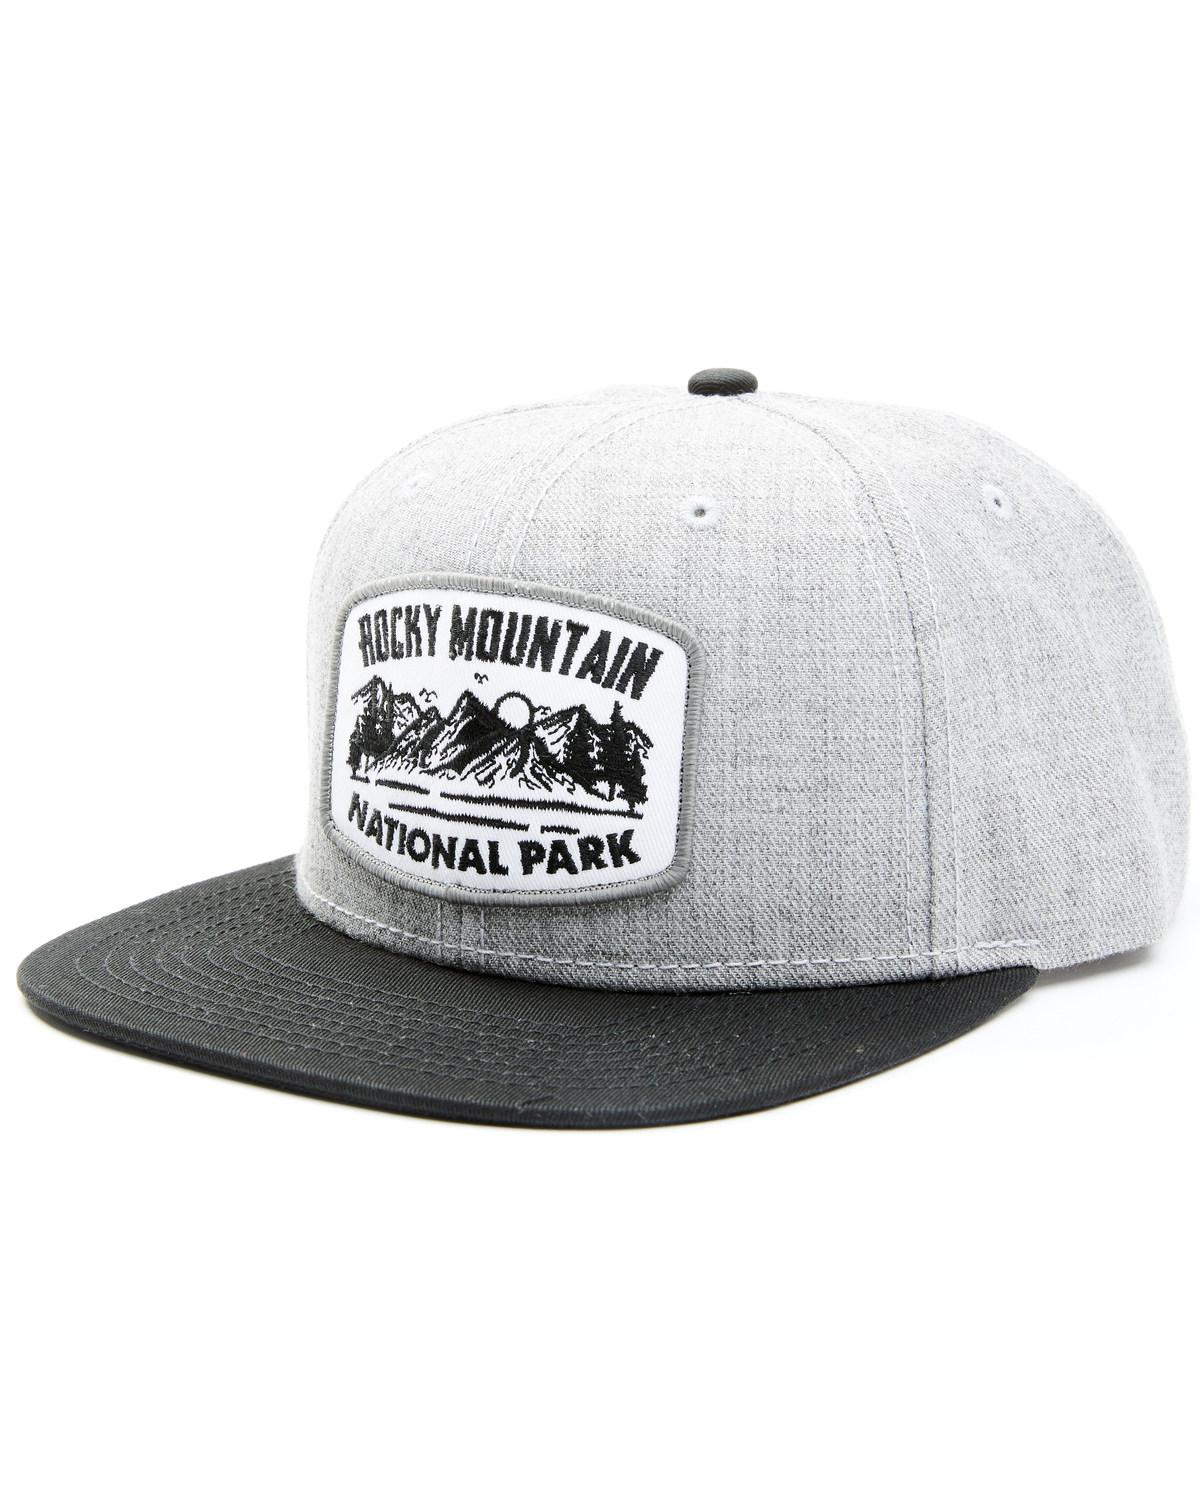 H3 Sportgear Men's Rocky Mountain National Park Patch Ball Cap